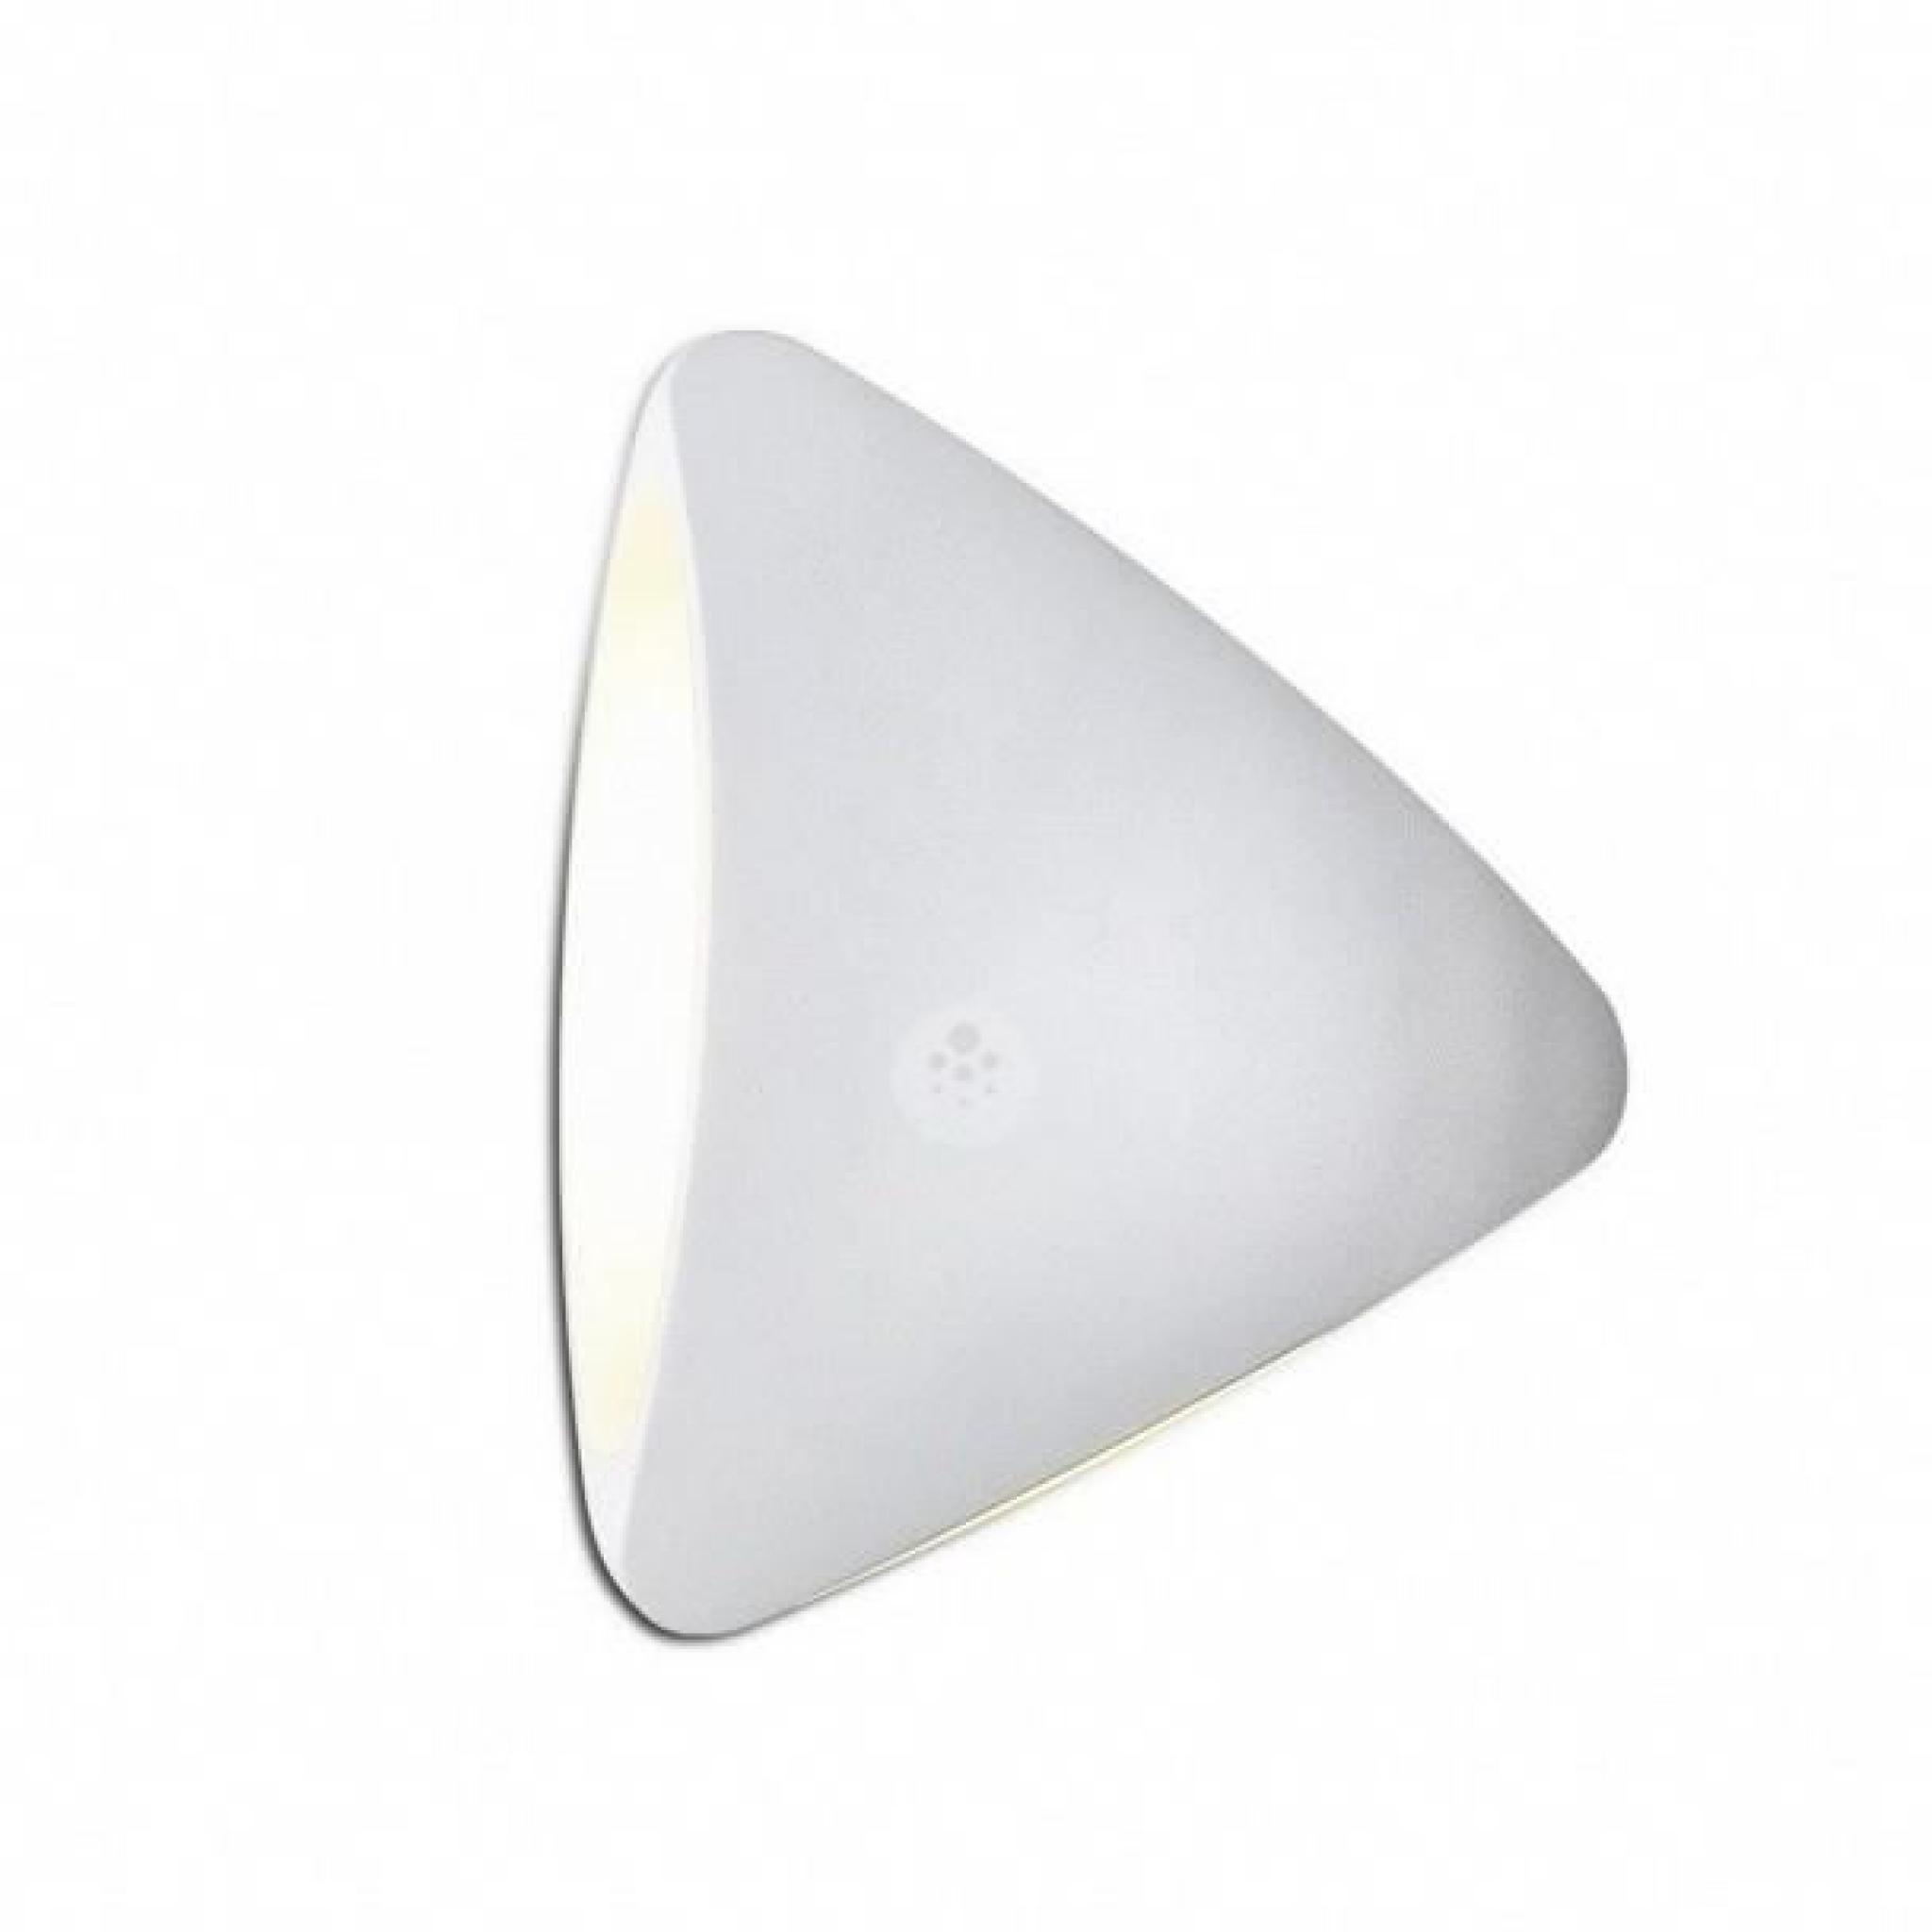 Applique LED triangle aluminium blanche design - Bowa pas cher